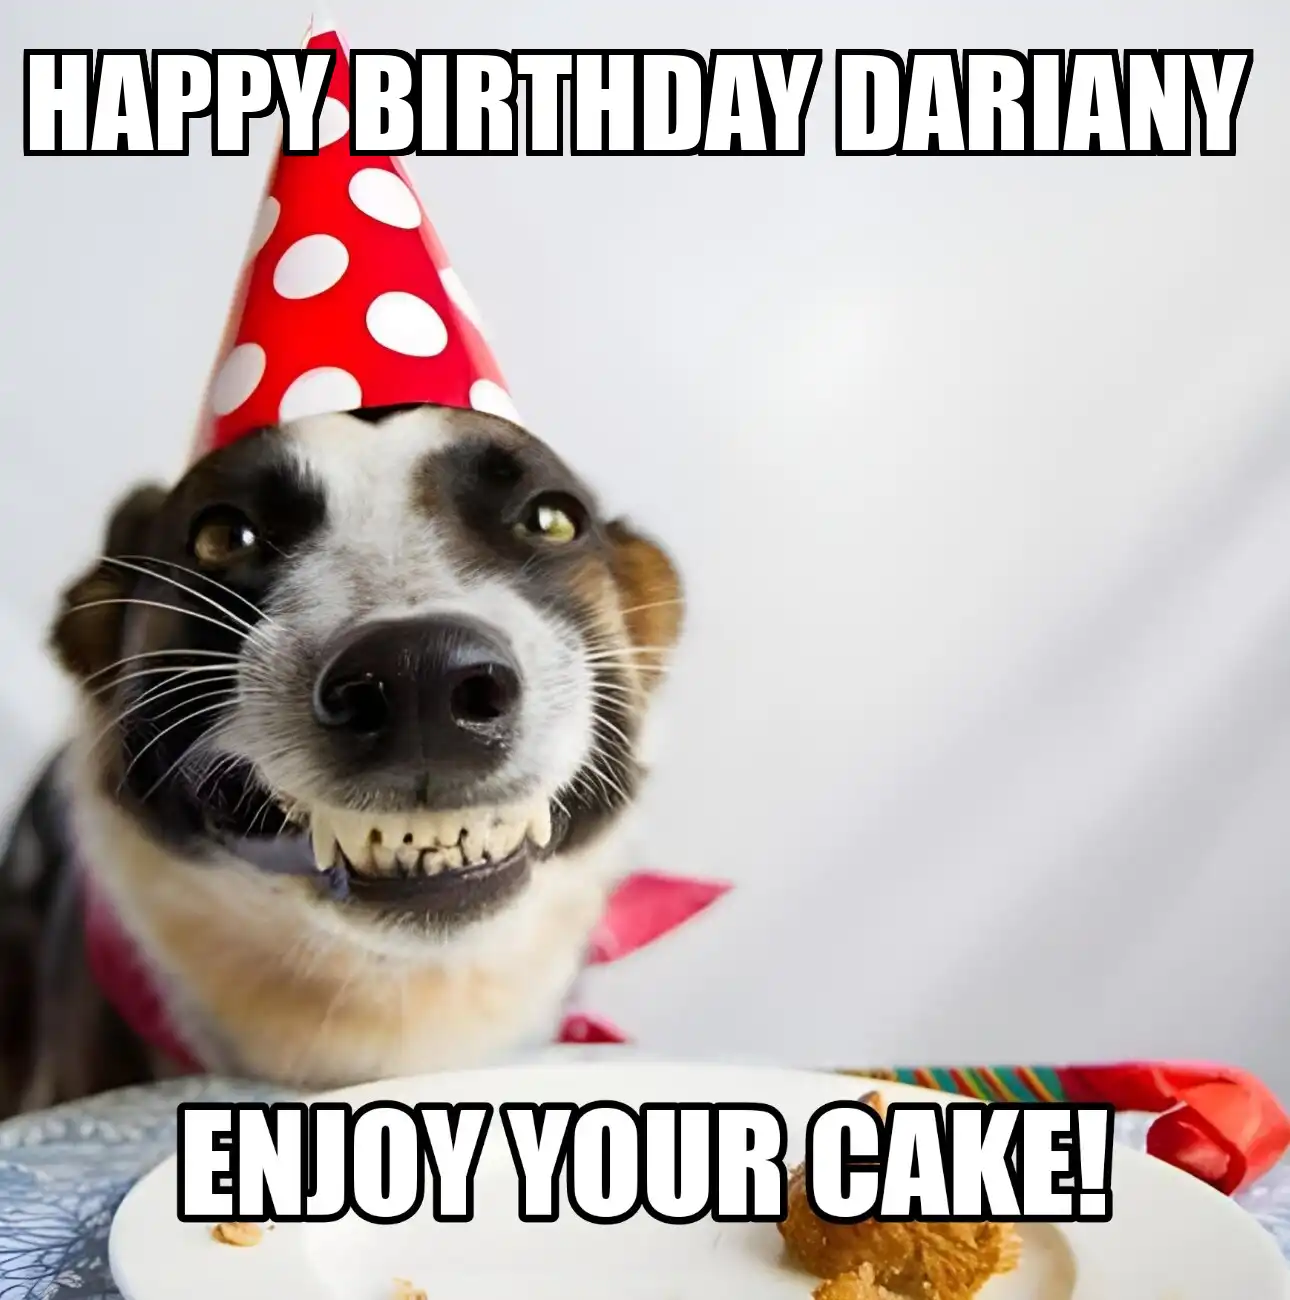 Happy Birthday Dariany Enjoy Your Cake Dog Meme